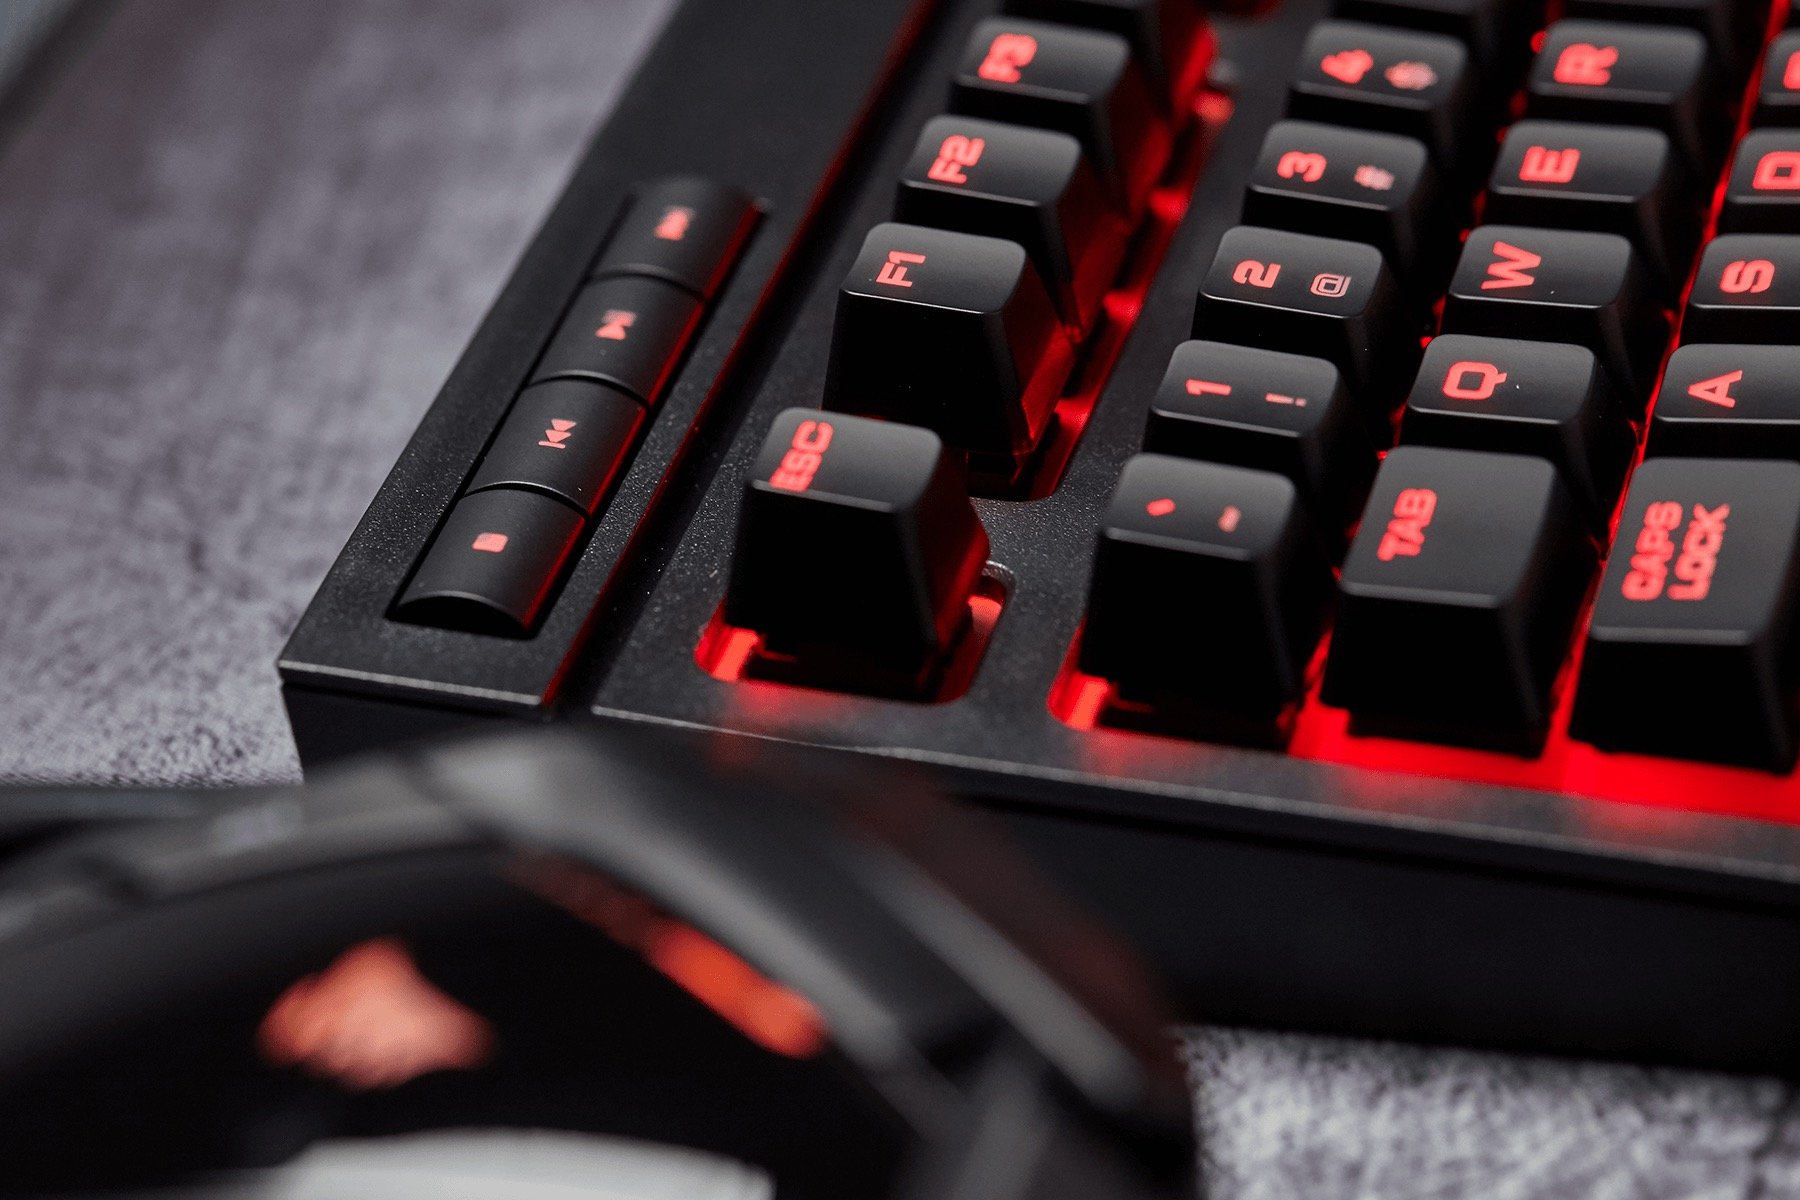 Image 10 : K63 : premier clavier gaming Corsair Cherry MX à moins de 100 euros